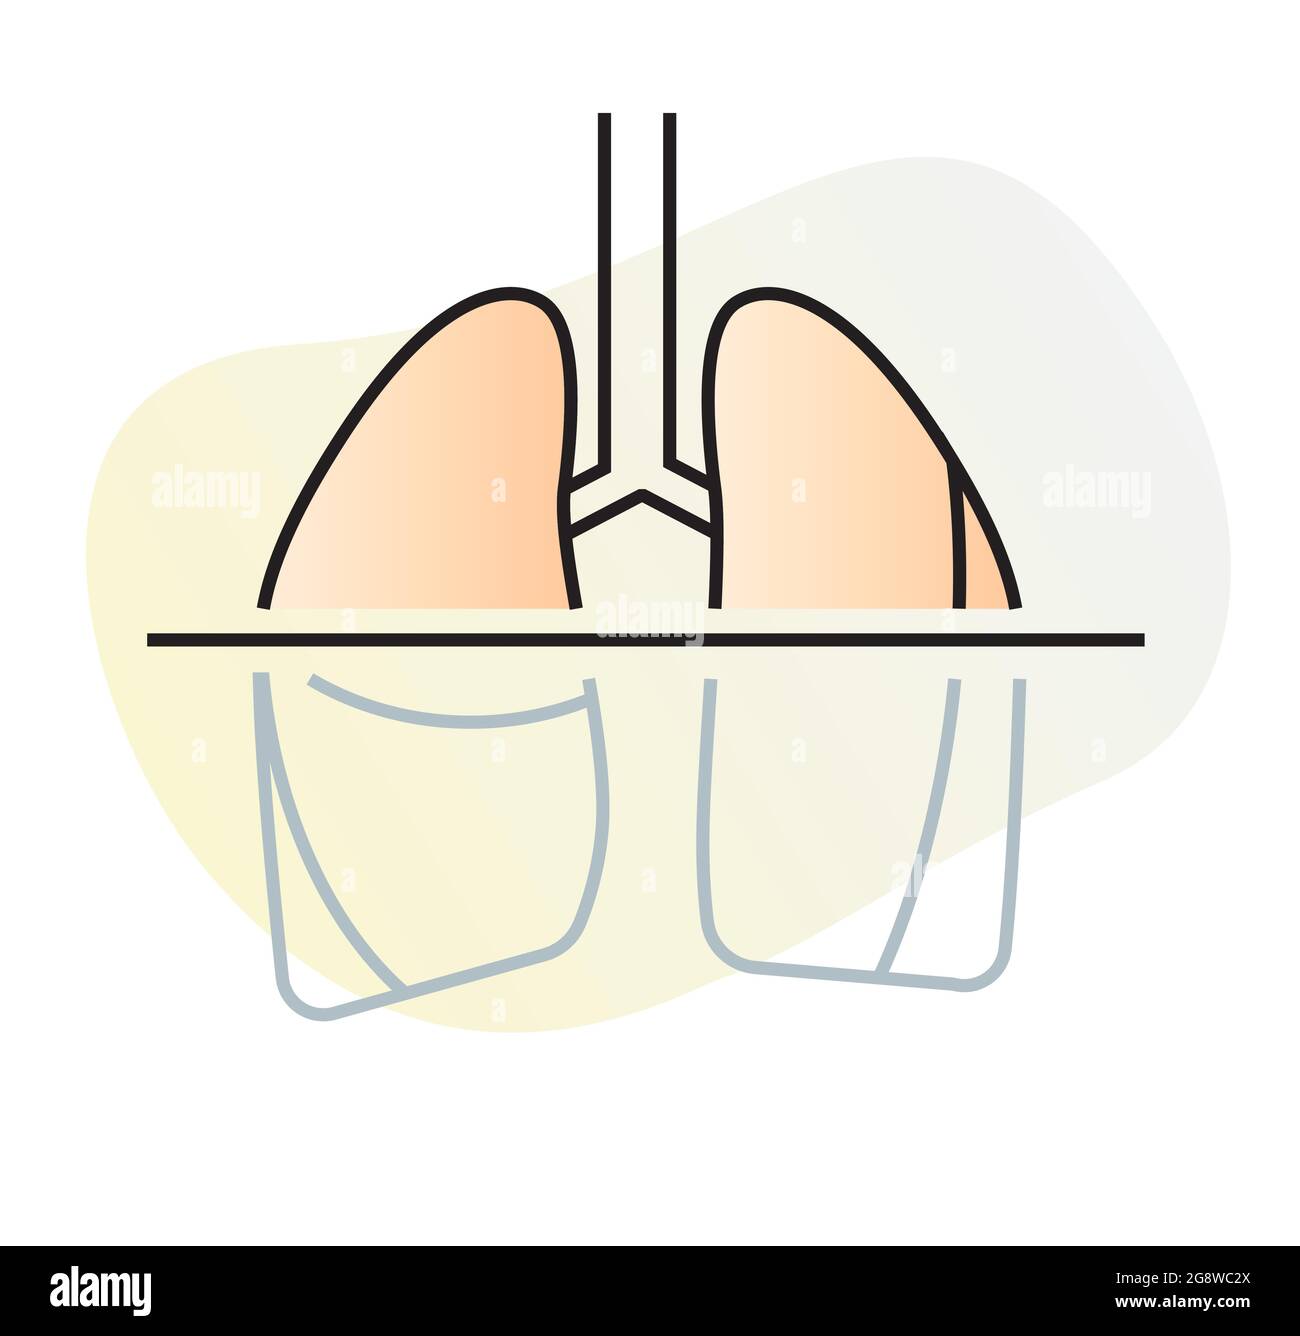 Test Covid-19 - examen CT des poumons humains - Illustration comme fichier EPS 10 Illustration de Vecteur